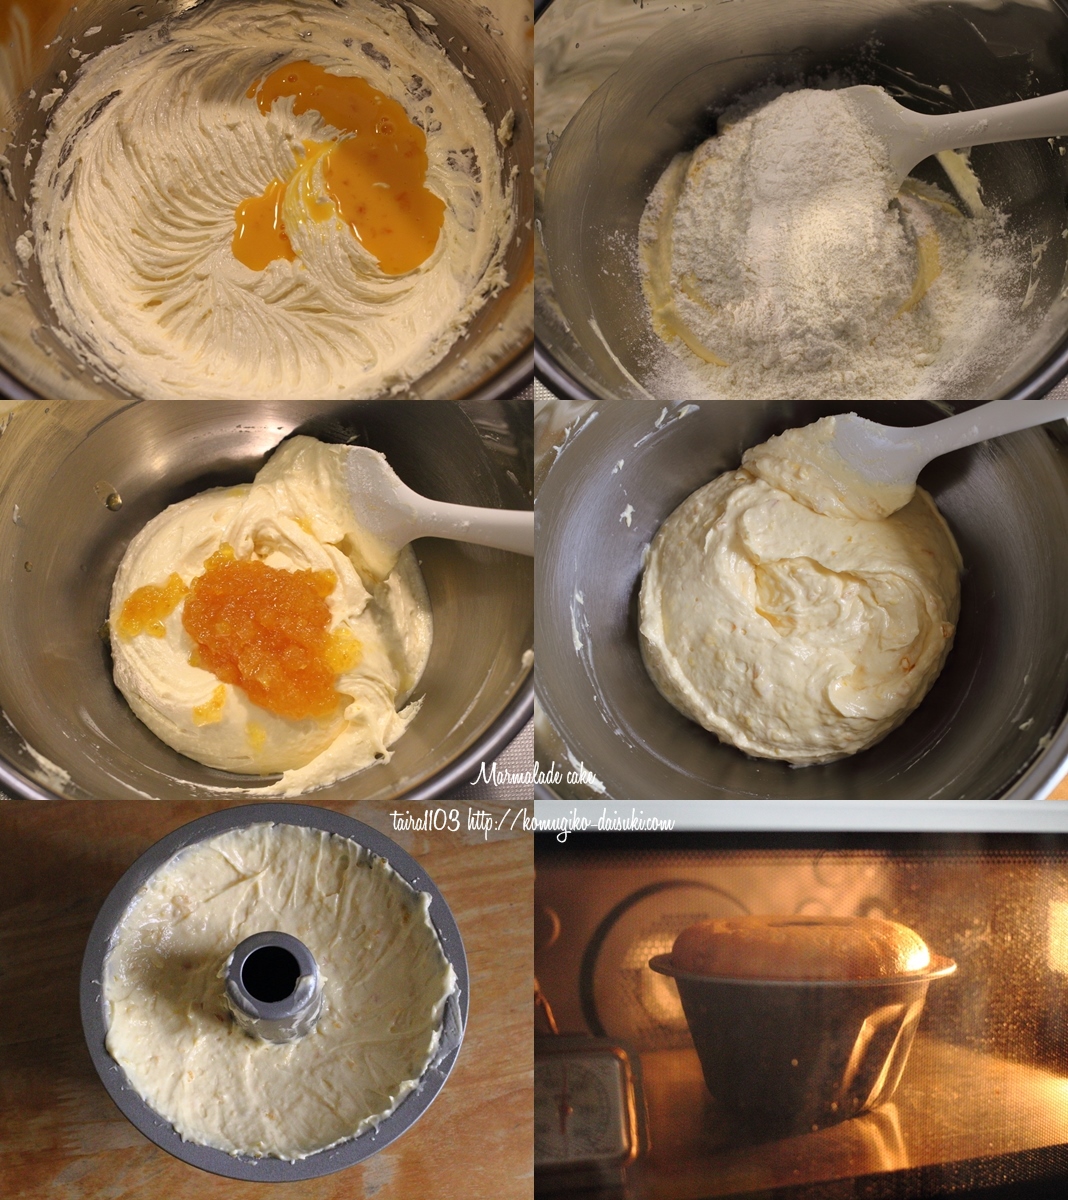 マーマレード消費に マーマレードクグロフケーキ レシピ付き 小麦粉だいすき